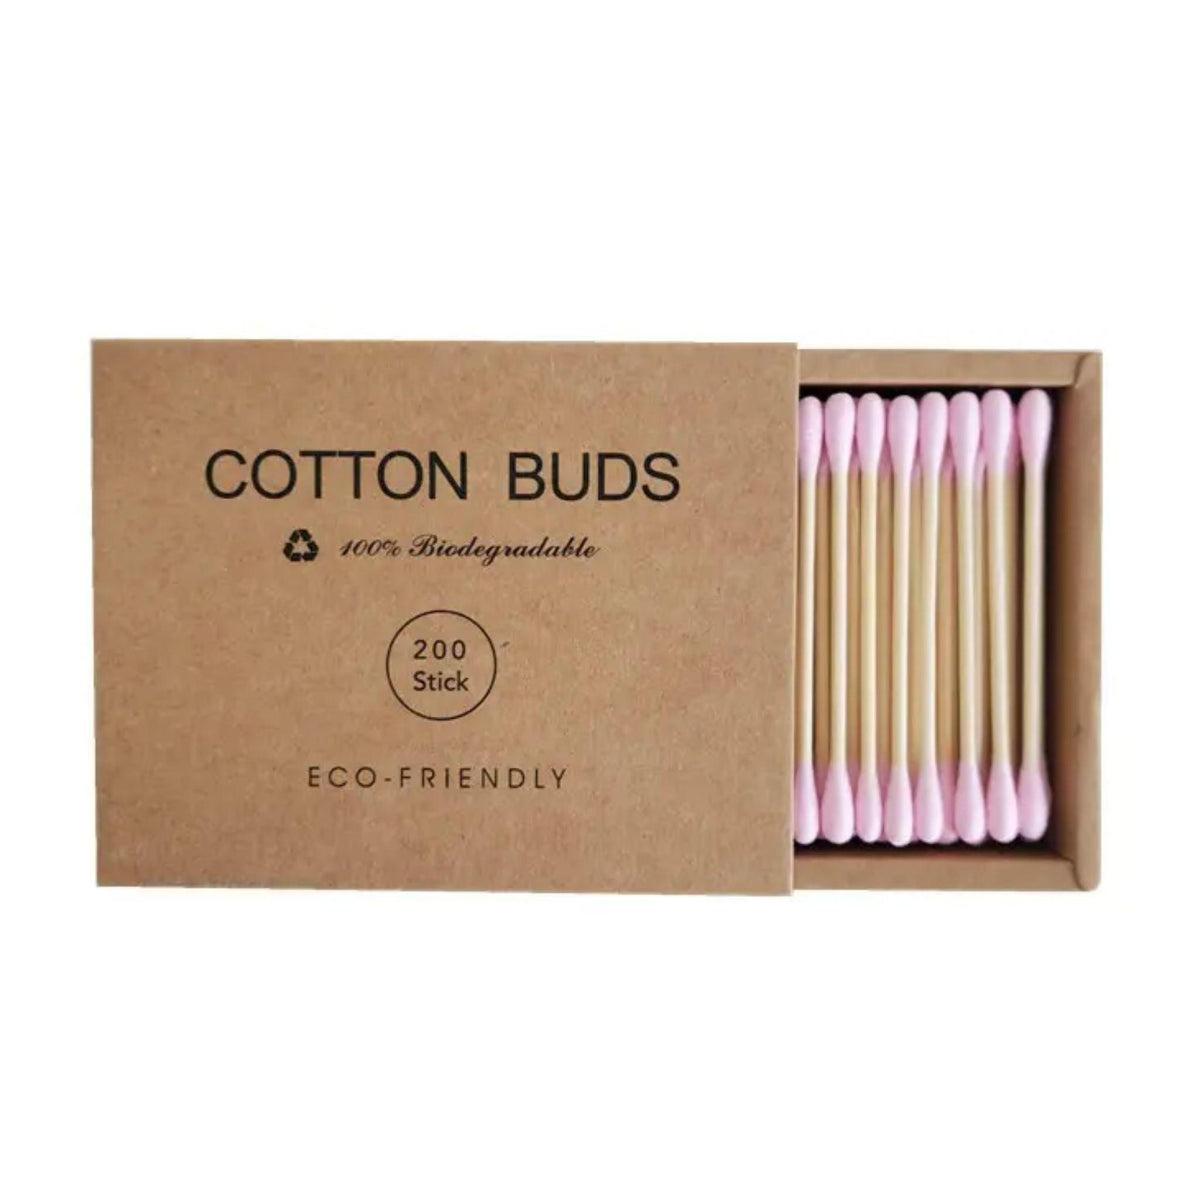 FLEX Beauty Wooden Long Cotton Applicators - 60pc